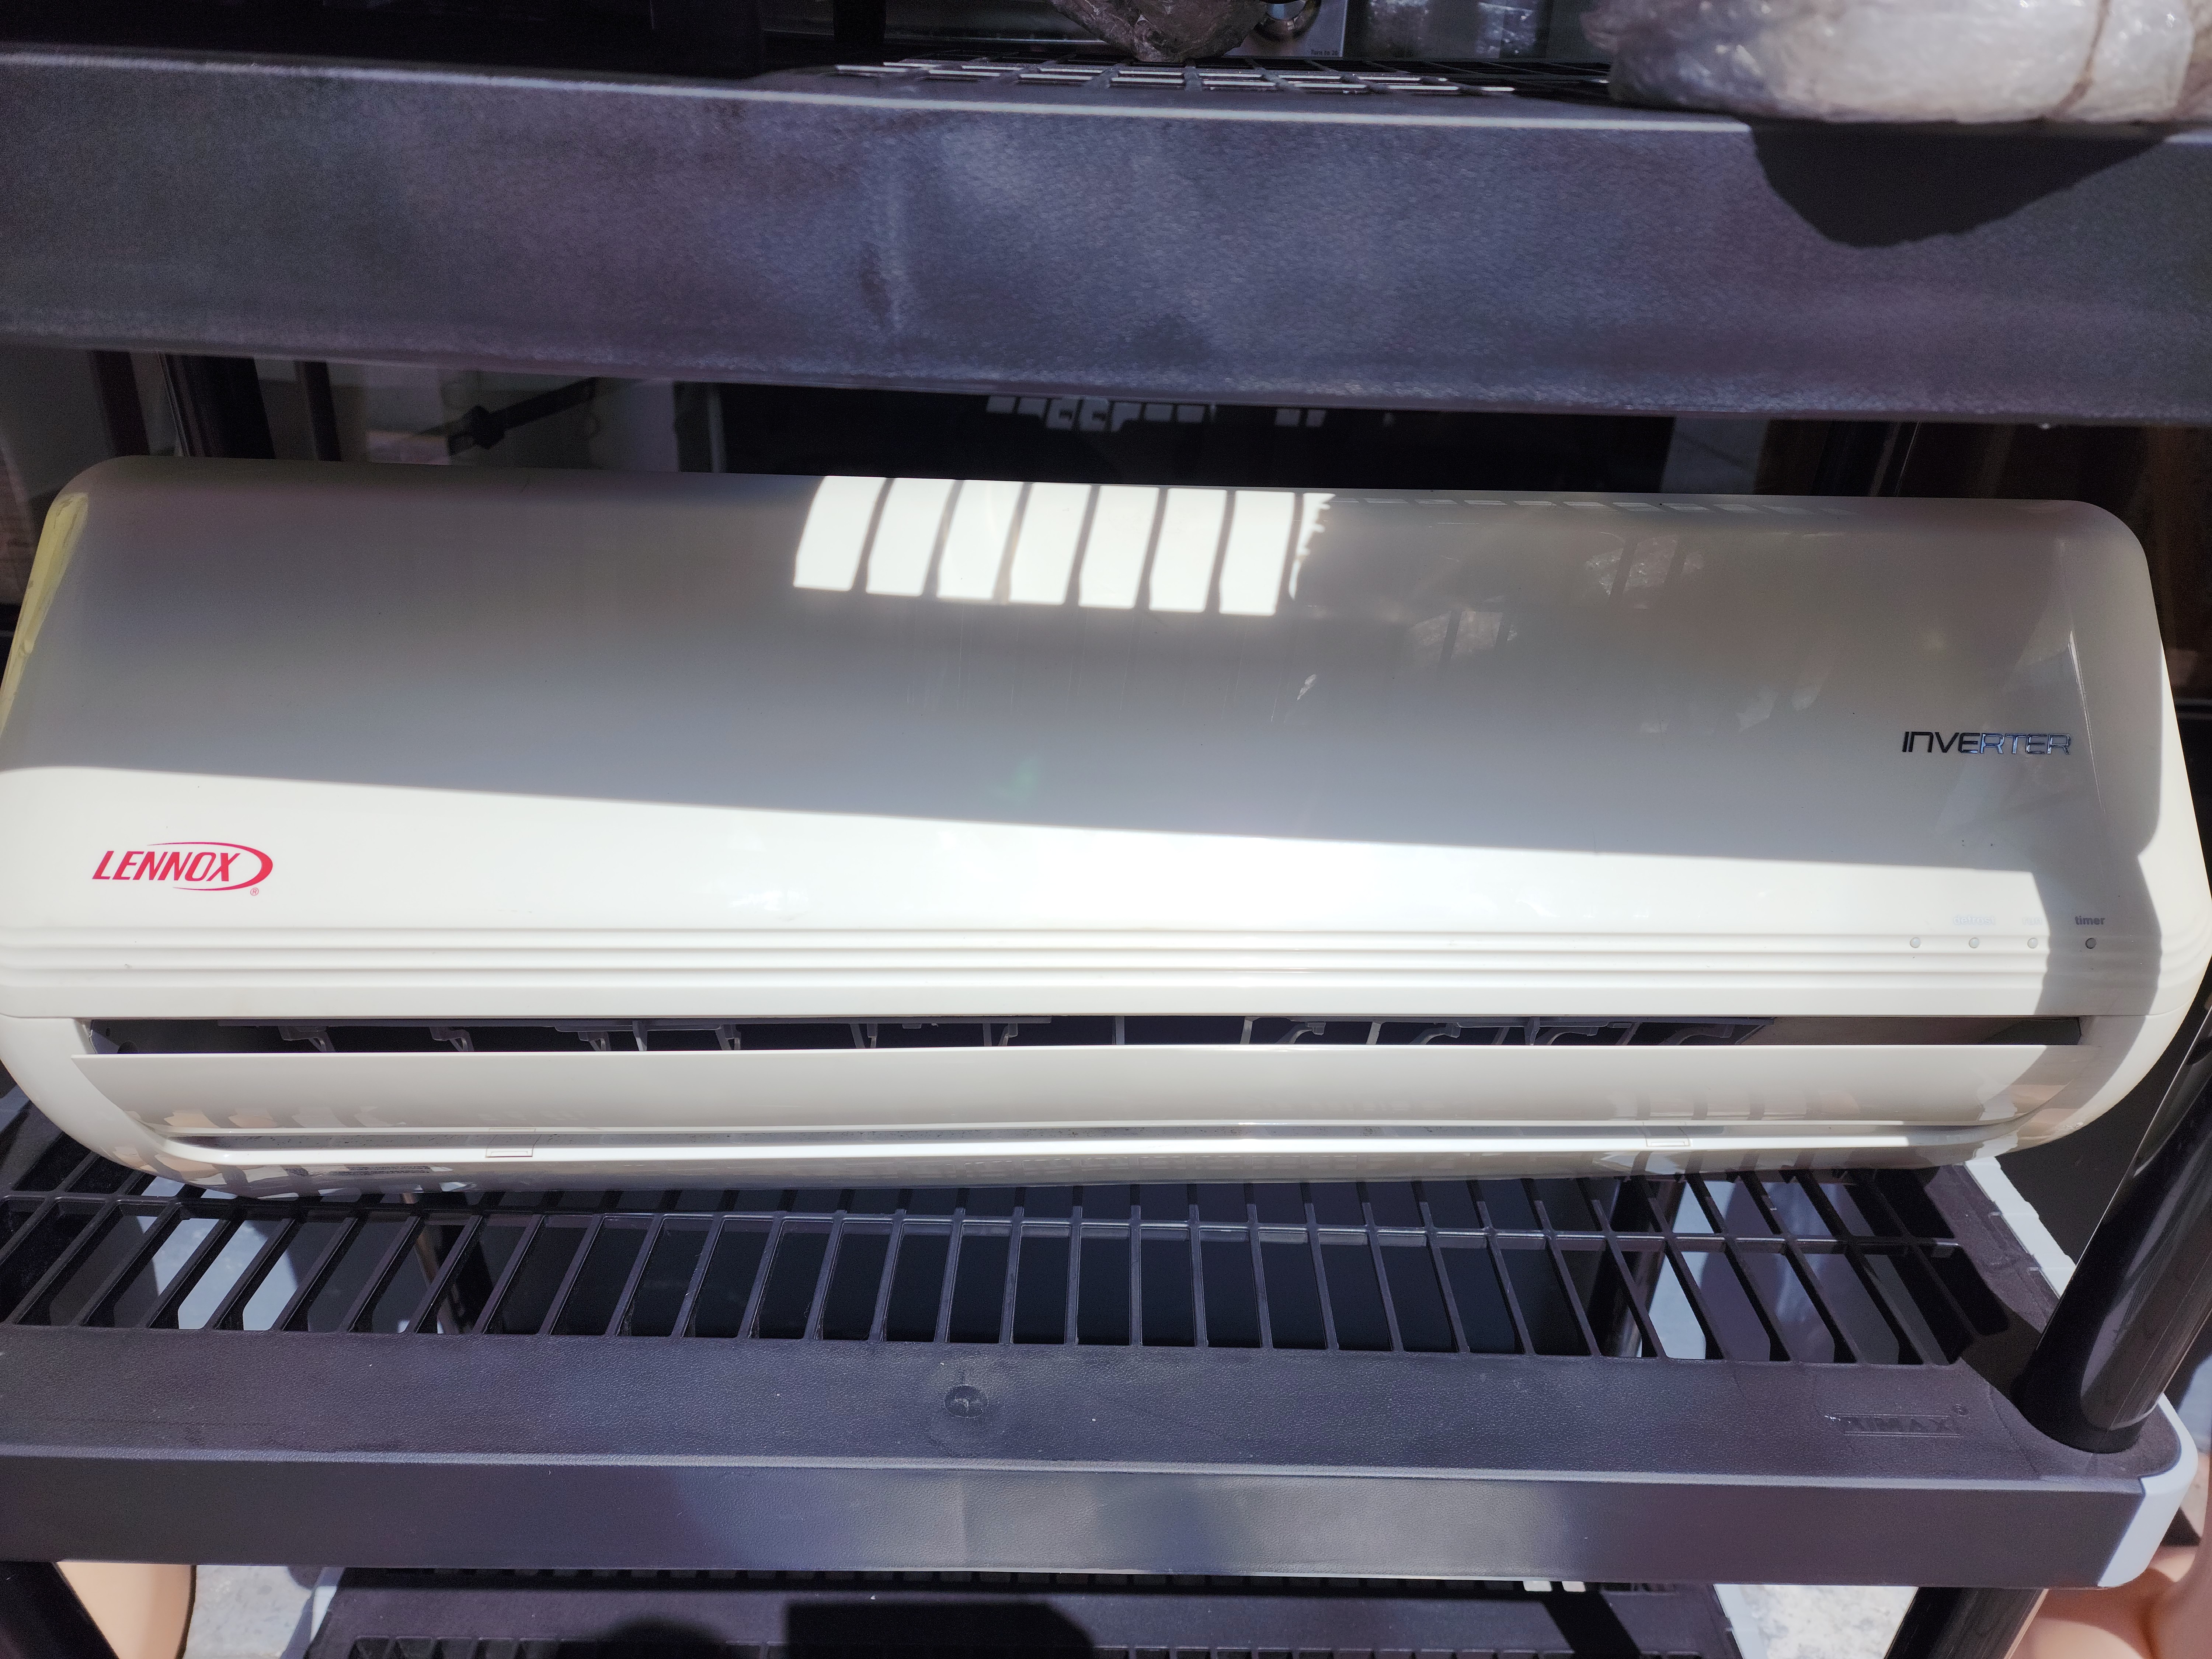 aires acondicionados y abanicos - Aire acondicionado lenox inverter 12,000 btu en 16,500 usado en muy buena condic